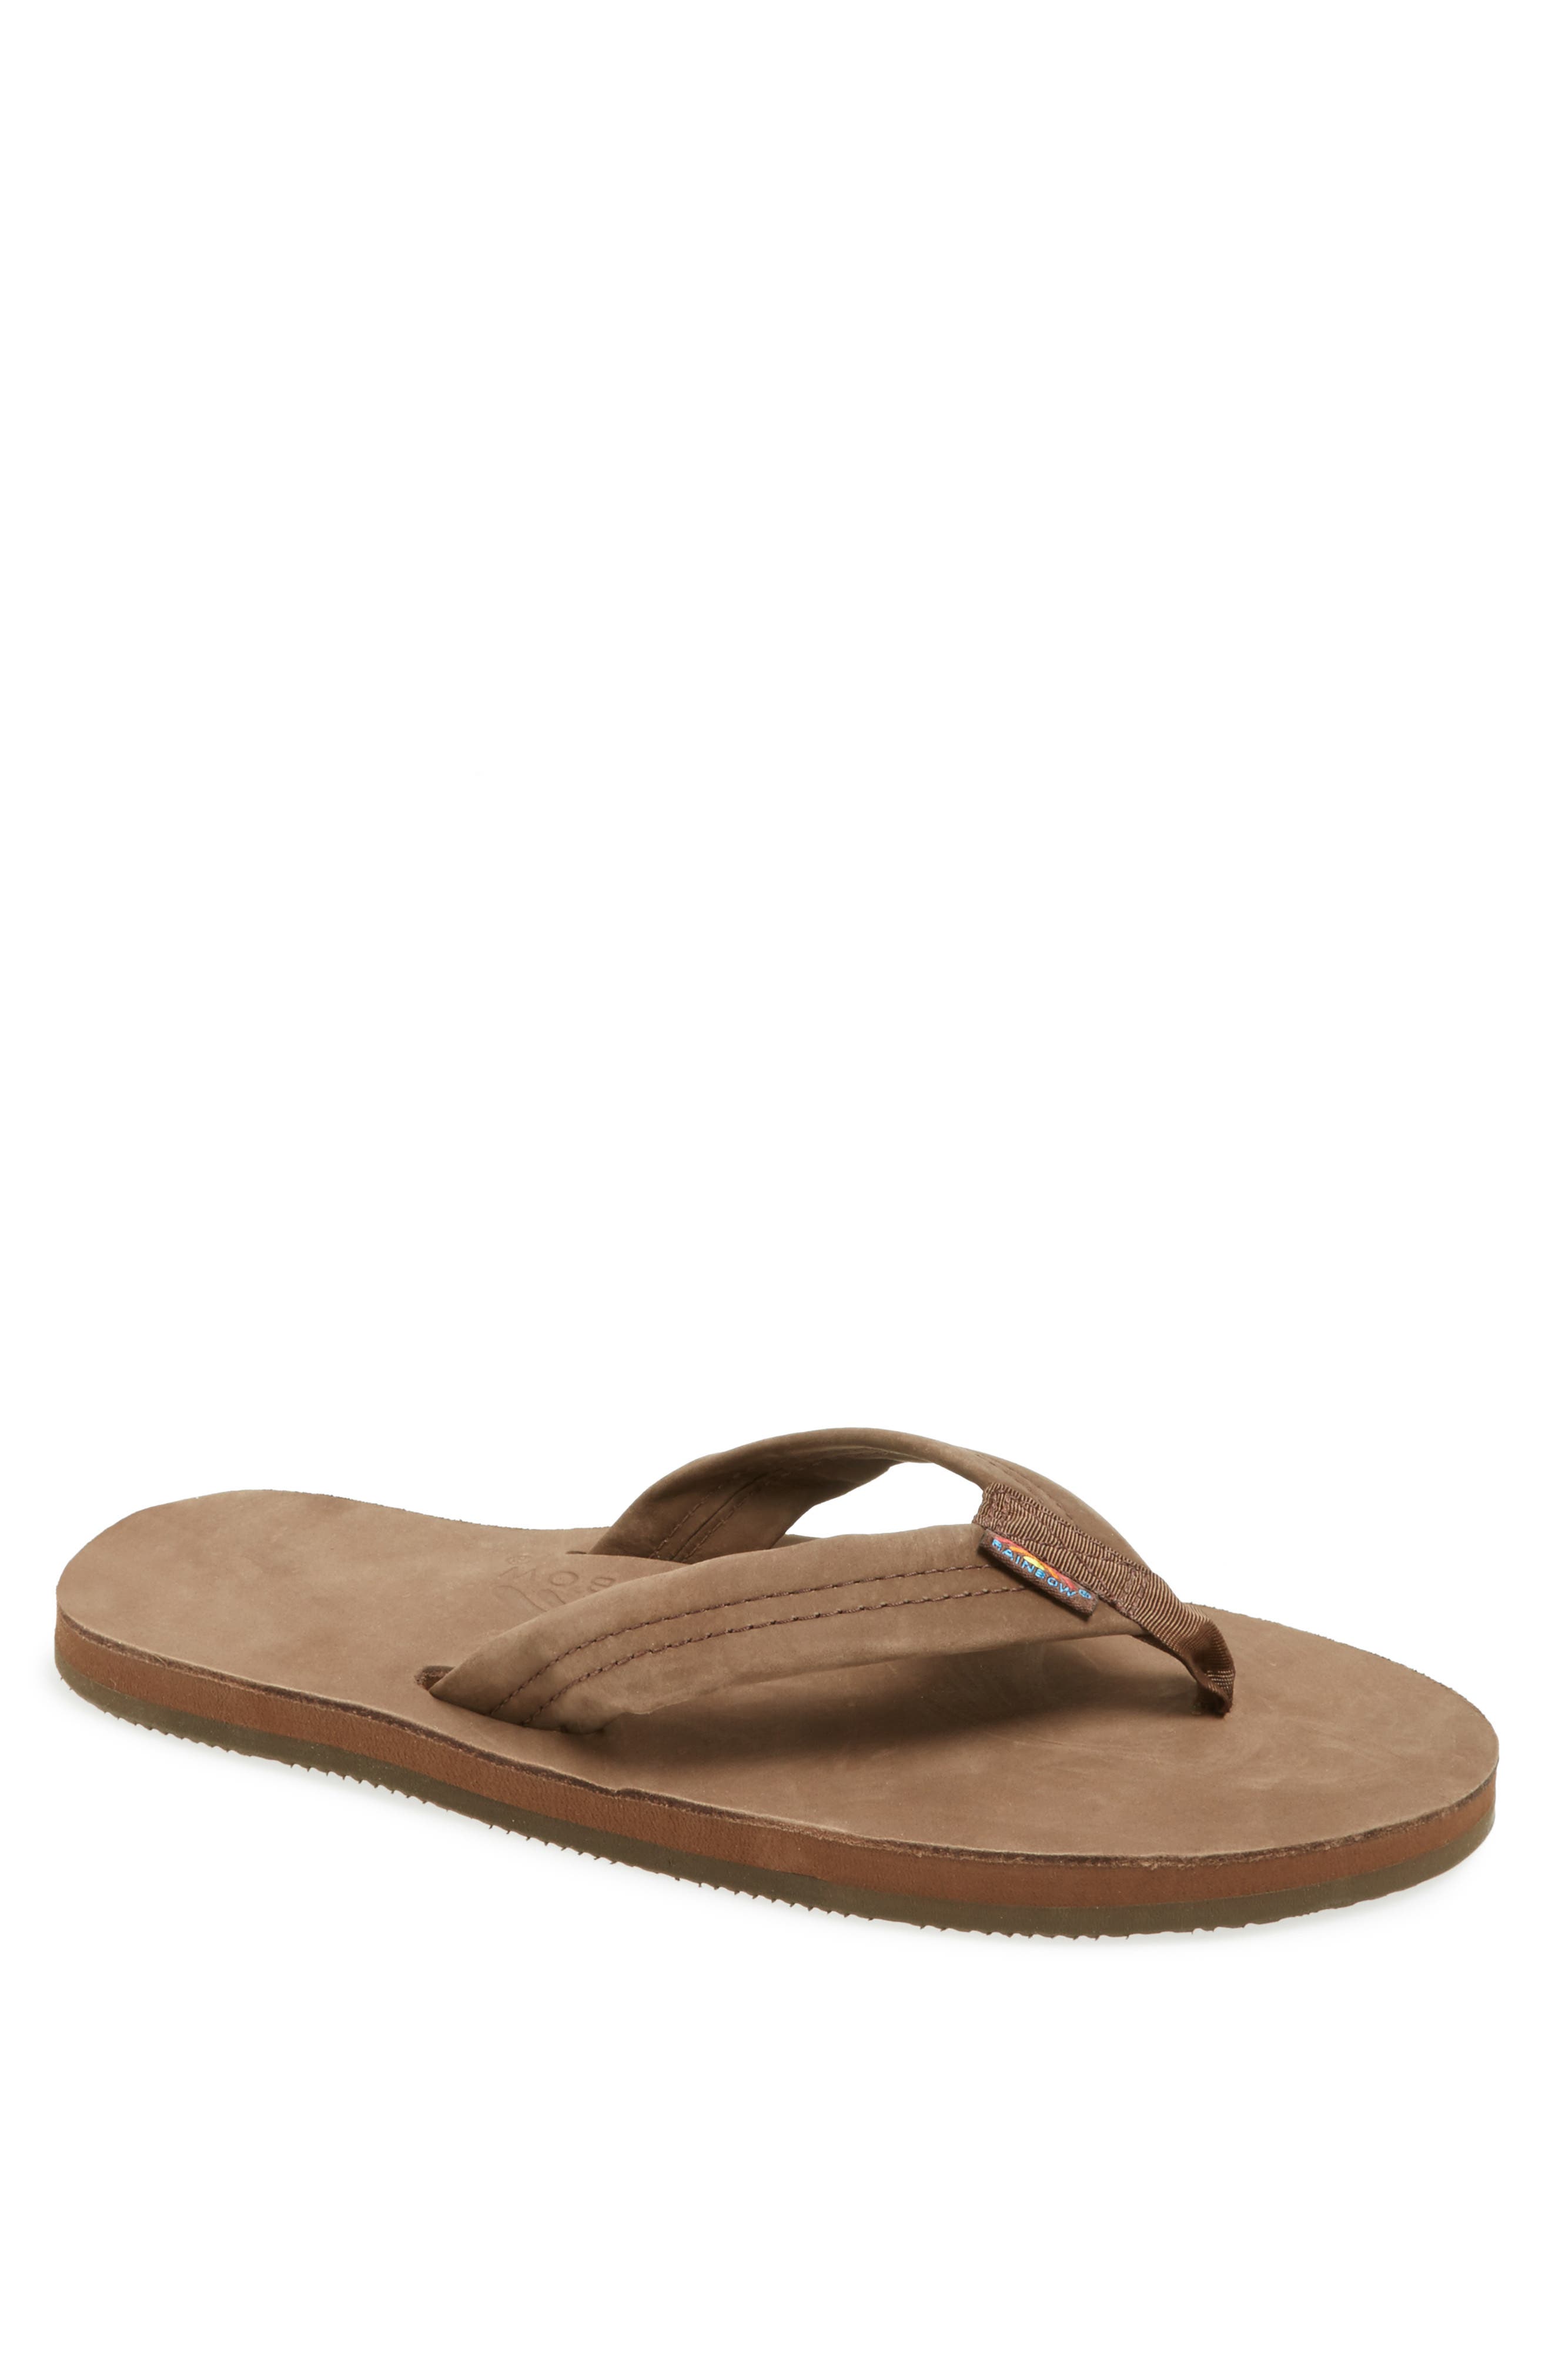 Sandals, Slides \u0026 Flip-Flops | Nordstrom